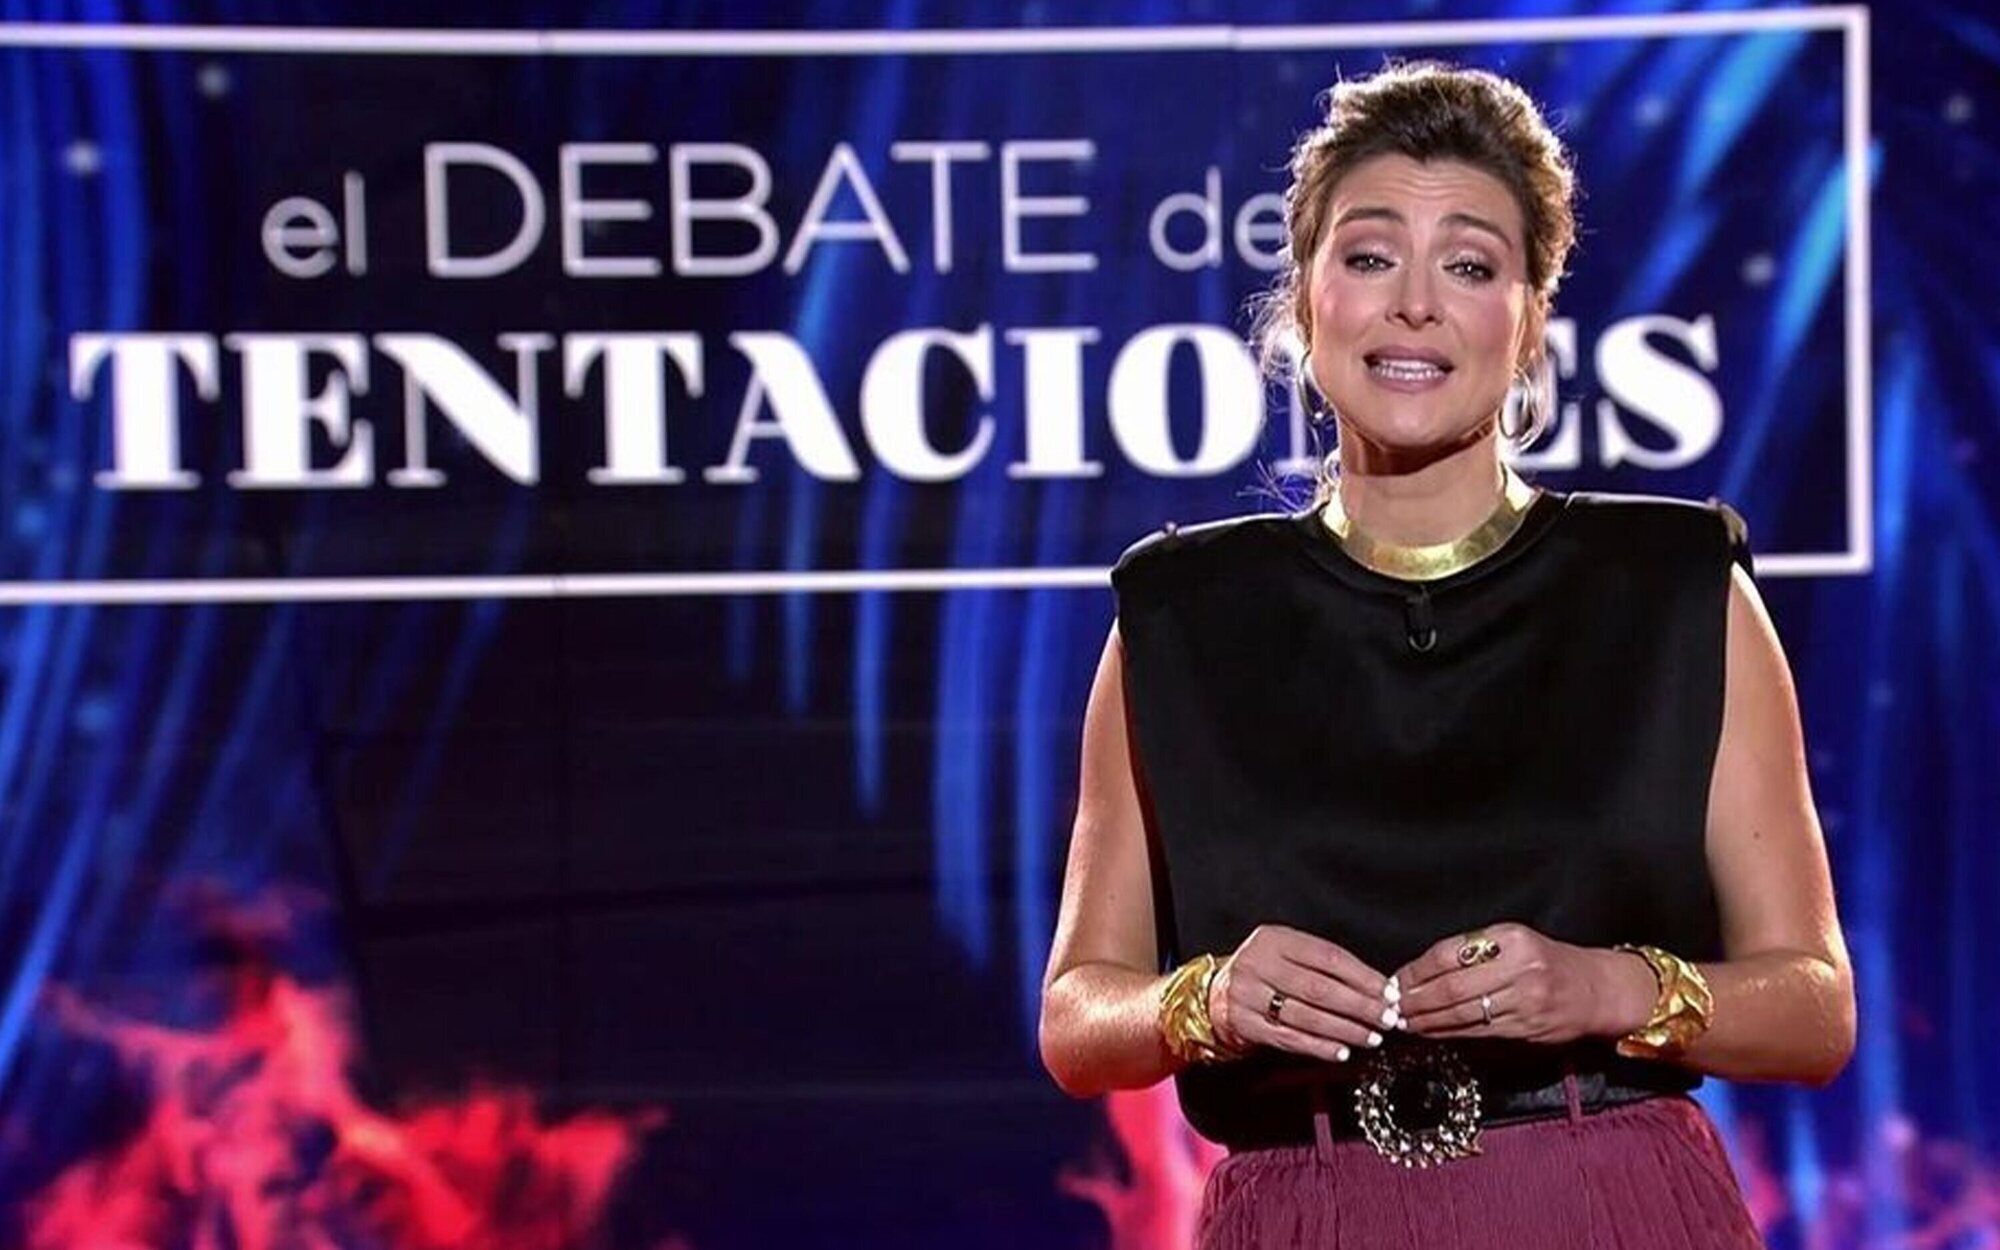 'La última tentación' se despide definitivamente el lunes 8 de noviembre con un gran debate en Telecinco